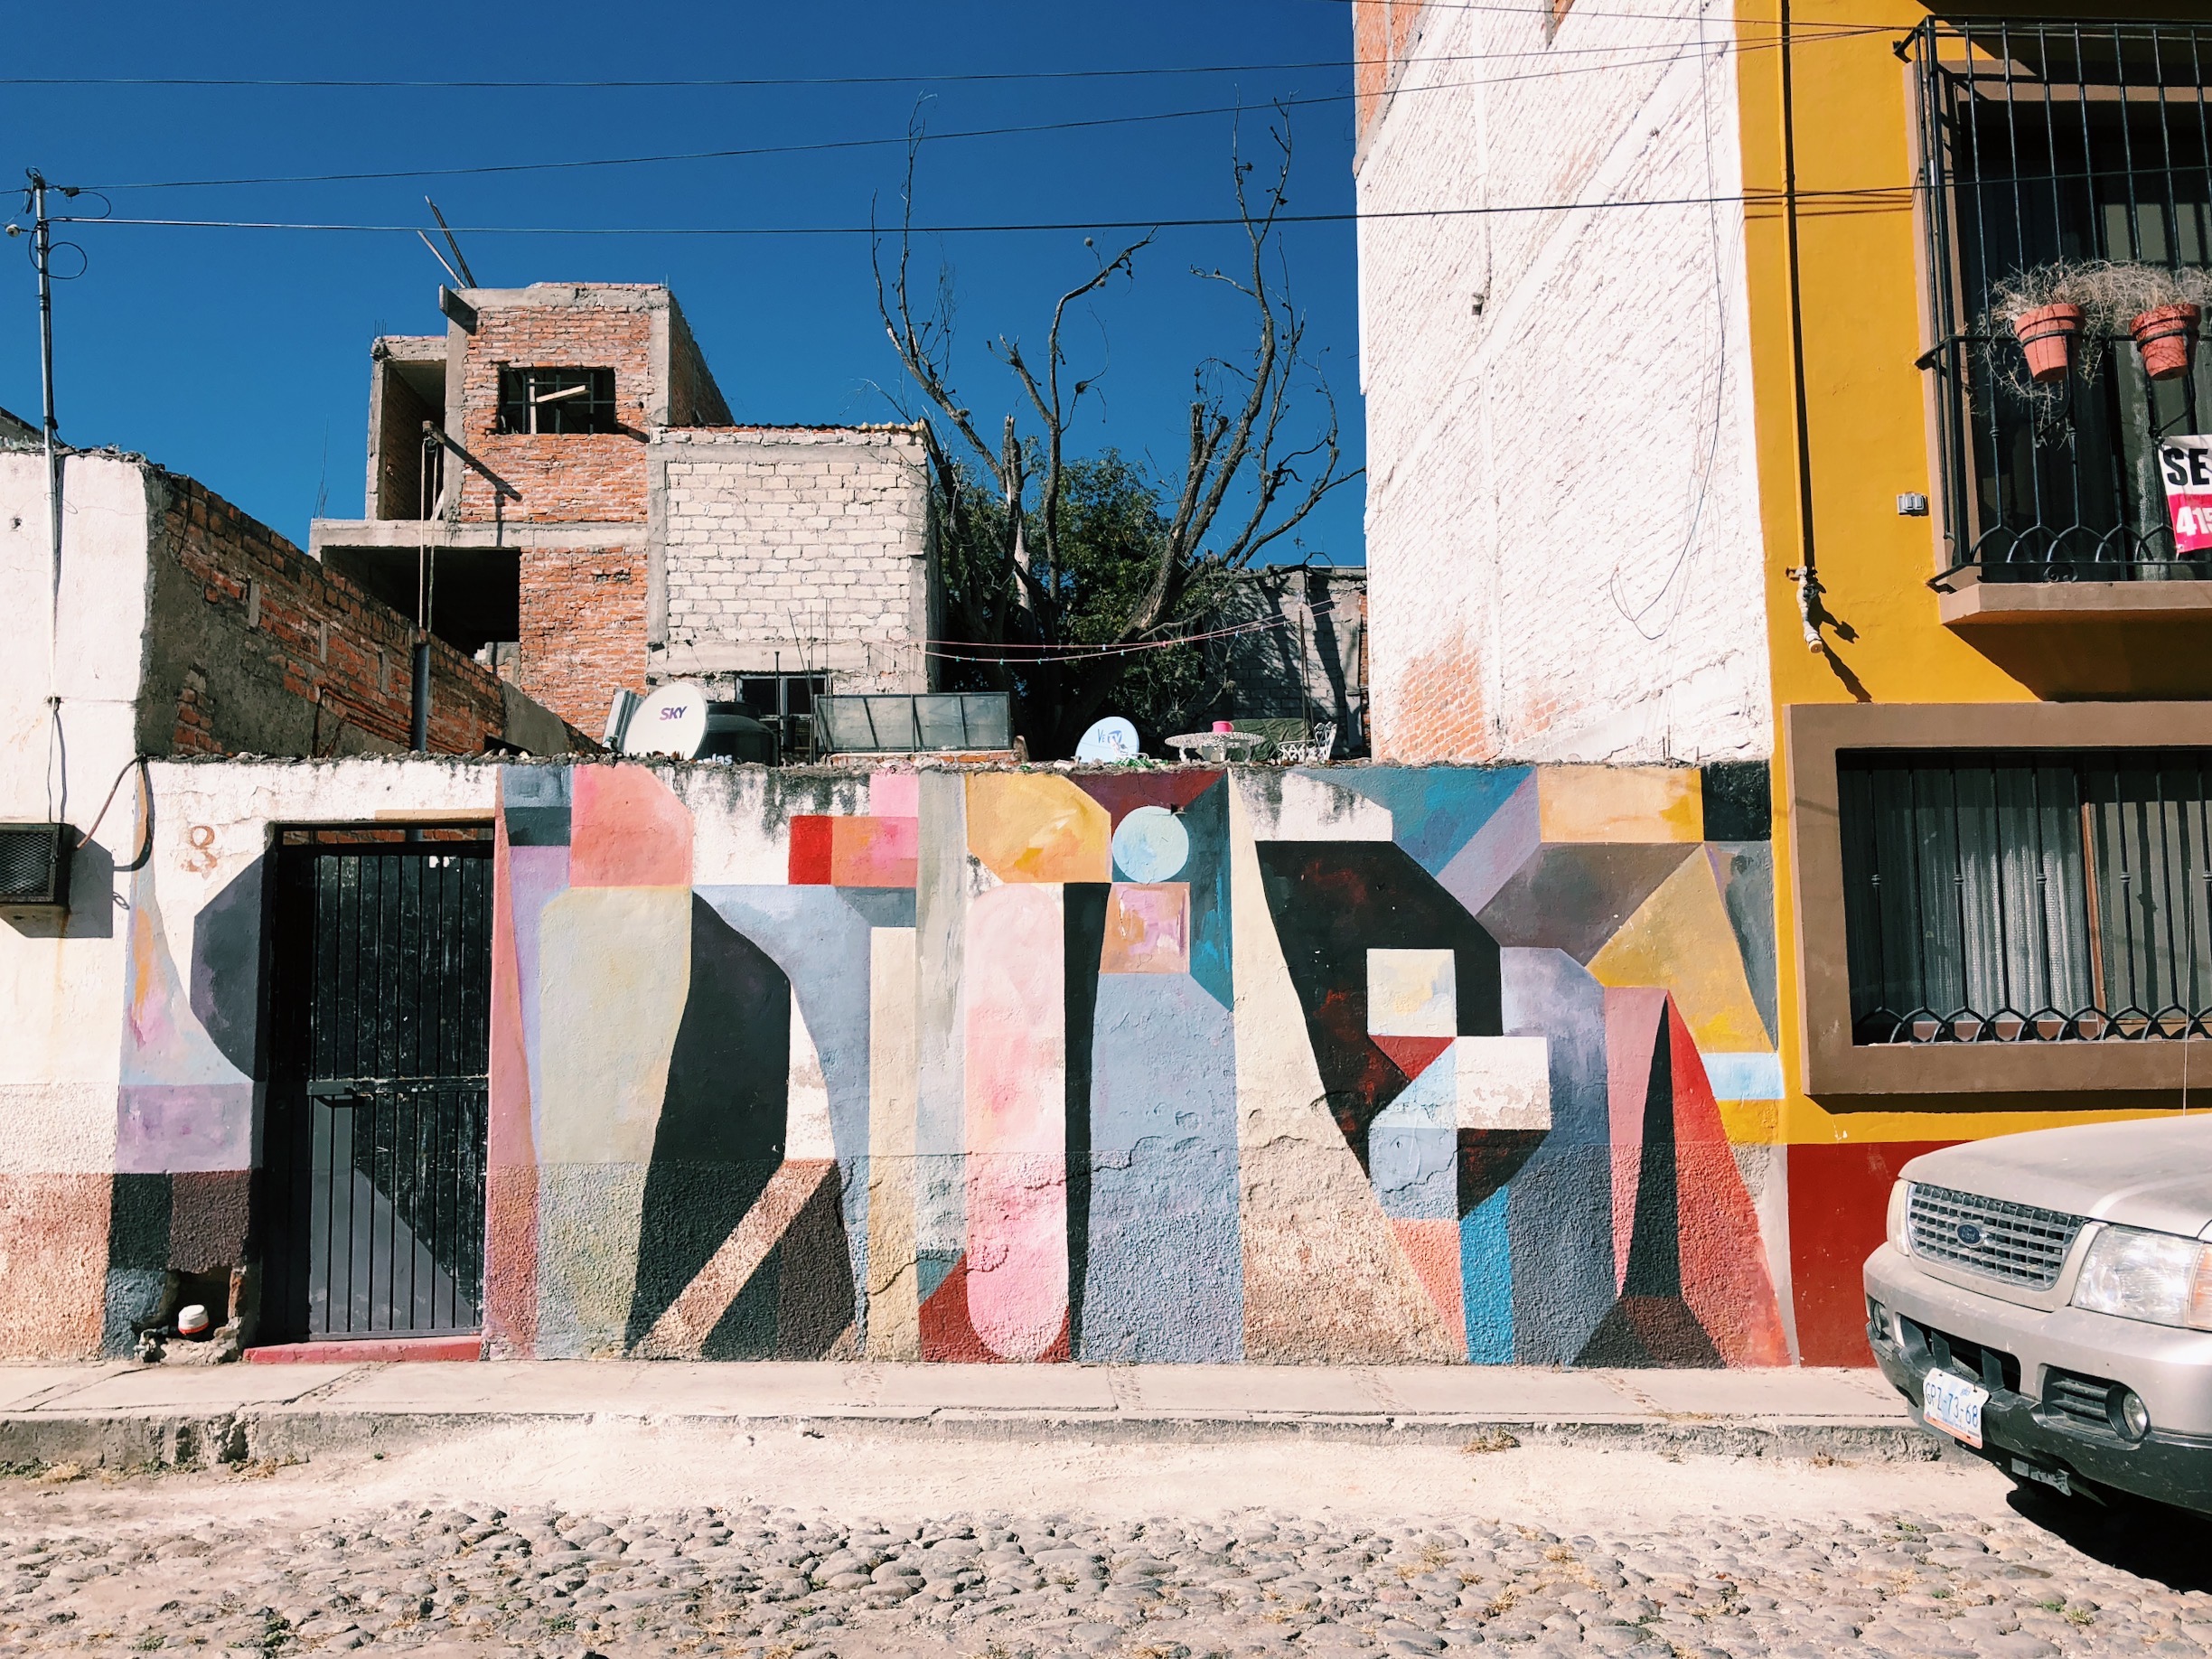 Mural by Nelio, San Miguel de Allende 2017